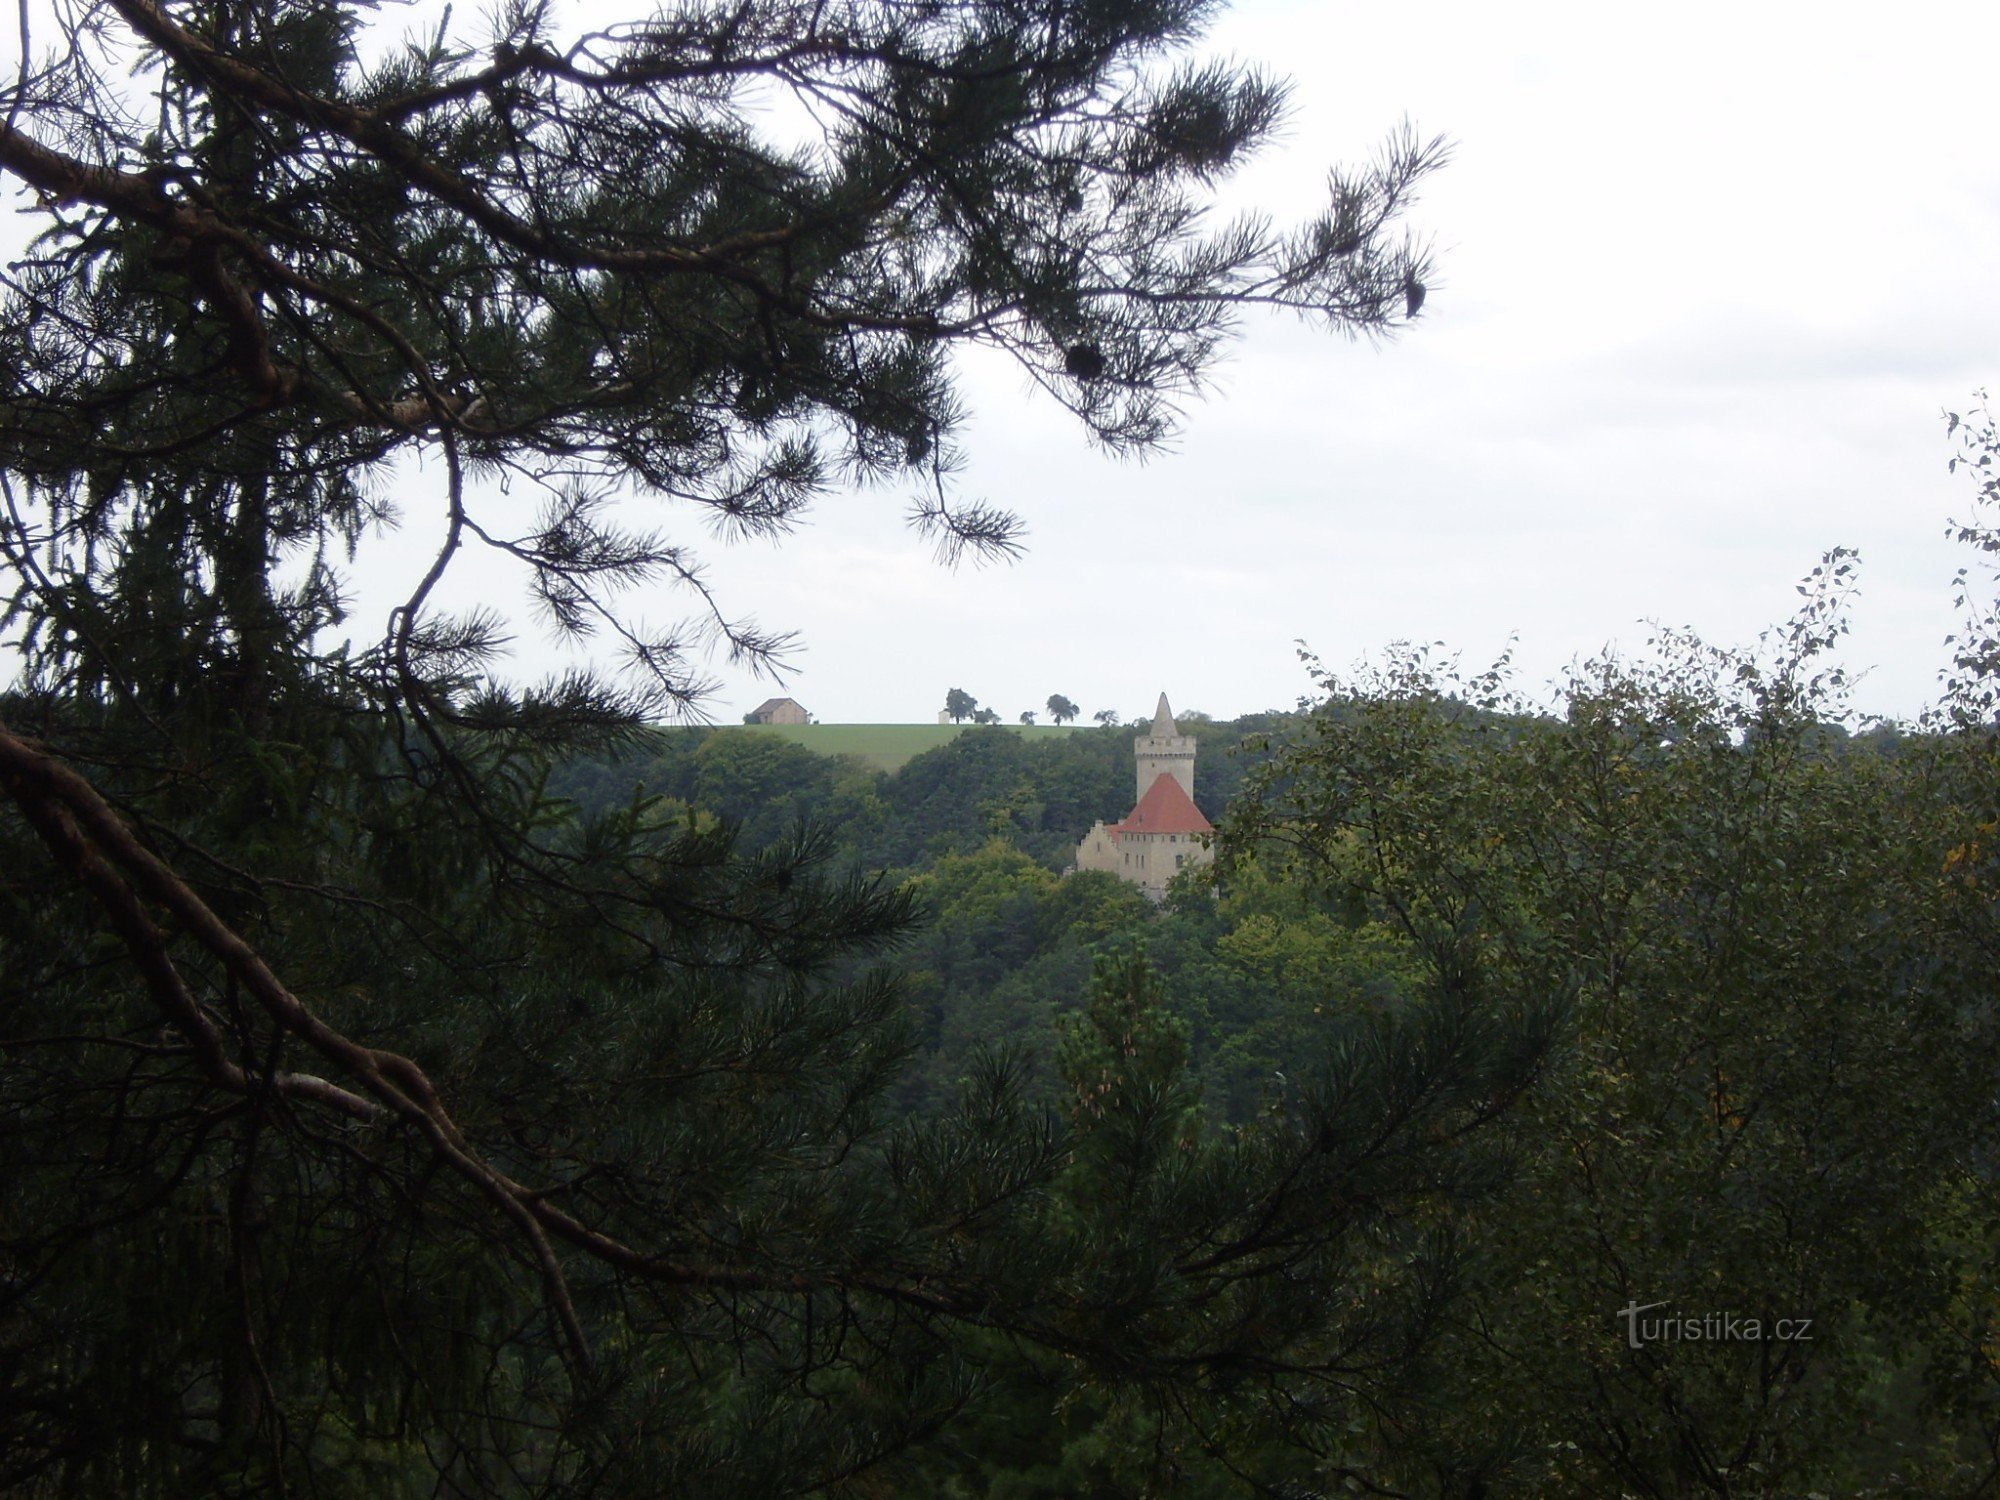 Udsigt over Kokořín Slot fra klipperne nær Podhradská cesta